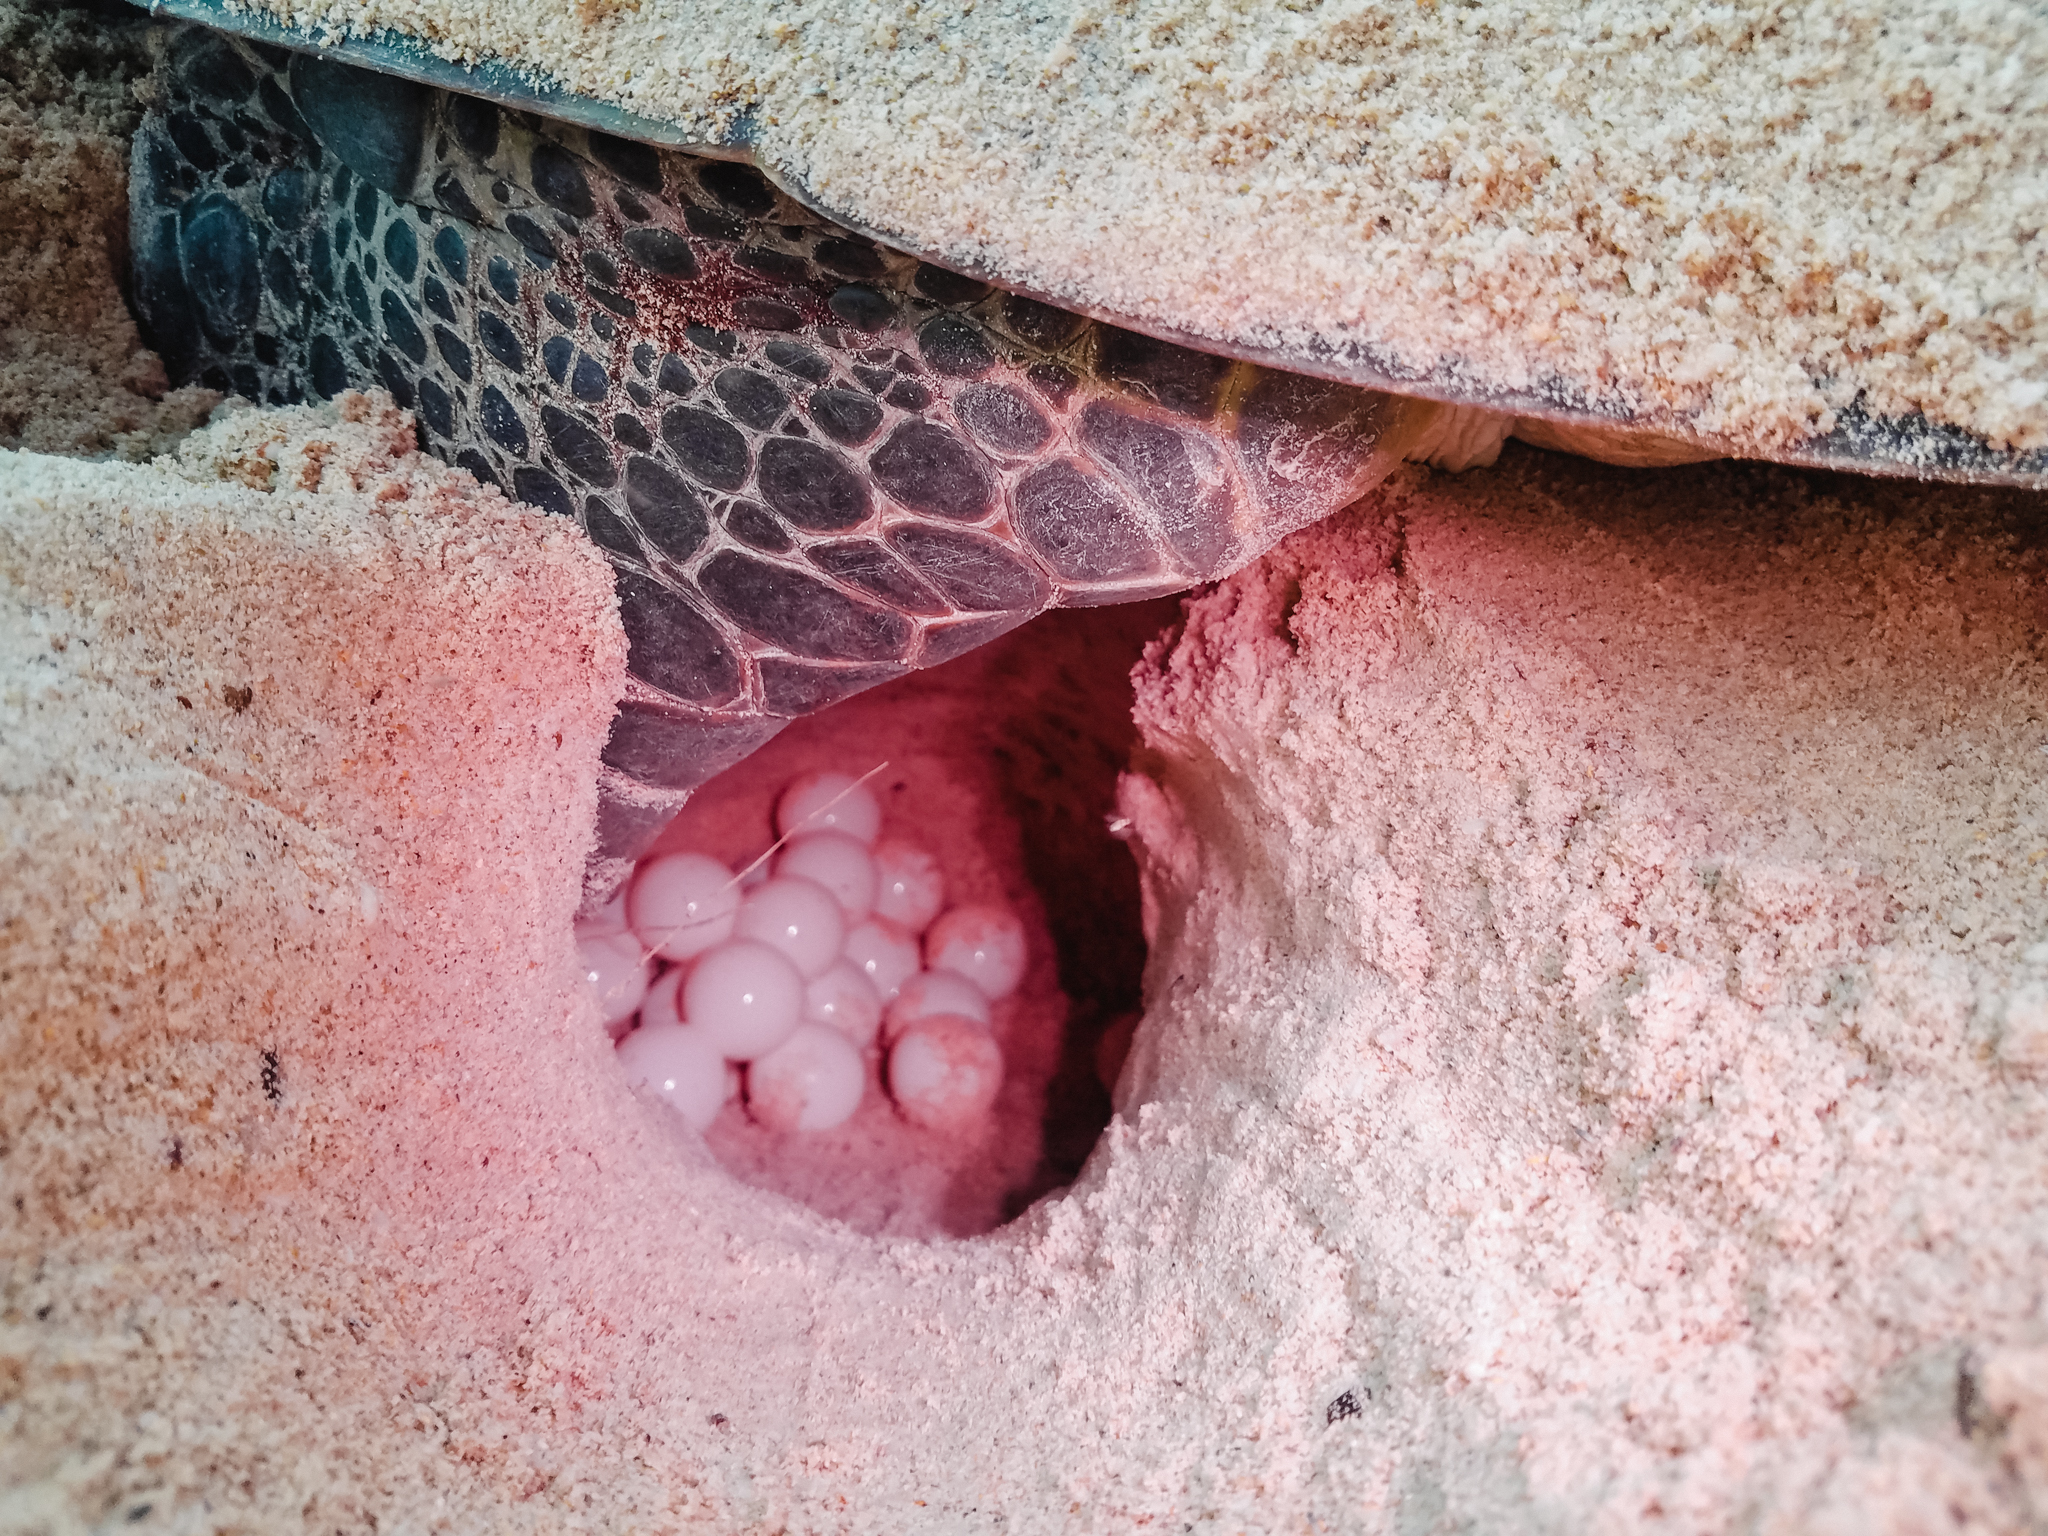 Di dời trứng rùa giúp tăng tỉ lệ nở của trứng. Trứng rùa tròn như quả bóng bàn với lớp vỏ đàn hồi tốt, không dễ vỡ như trứng gà. Dù vậy, khi di dời trứng, các tình nguyện viên phải nhẹ tay. 